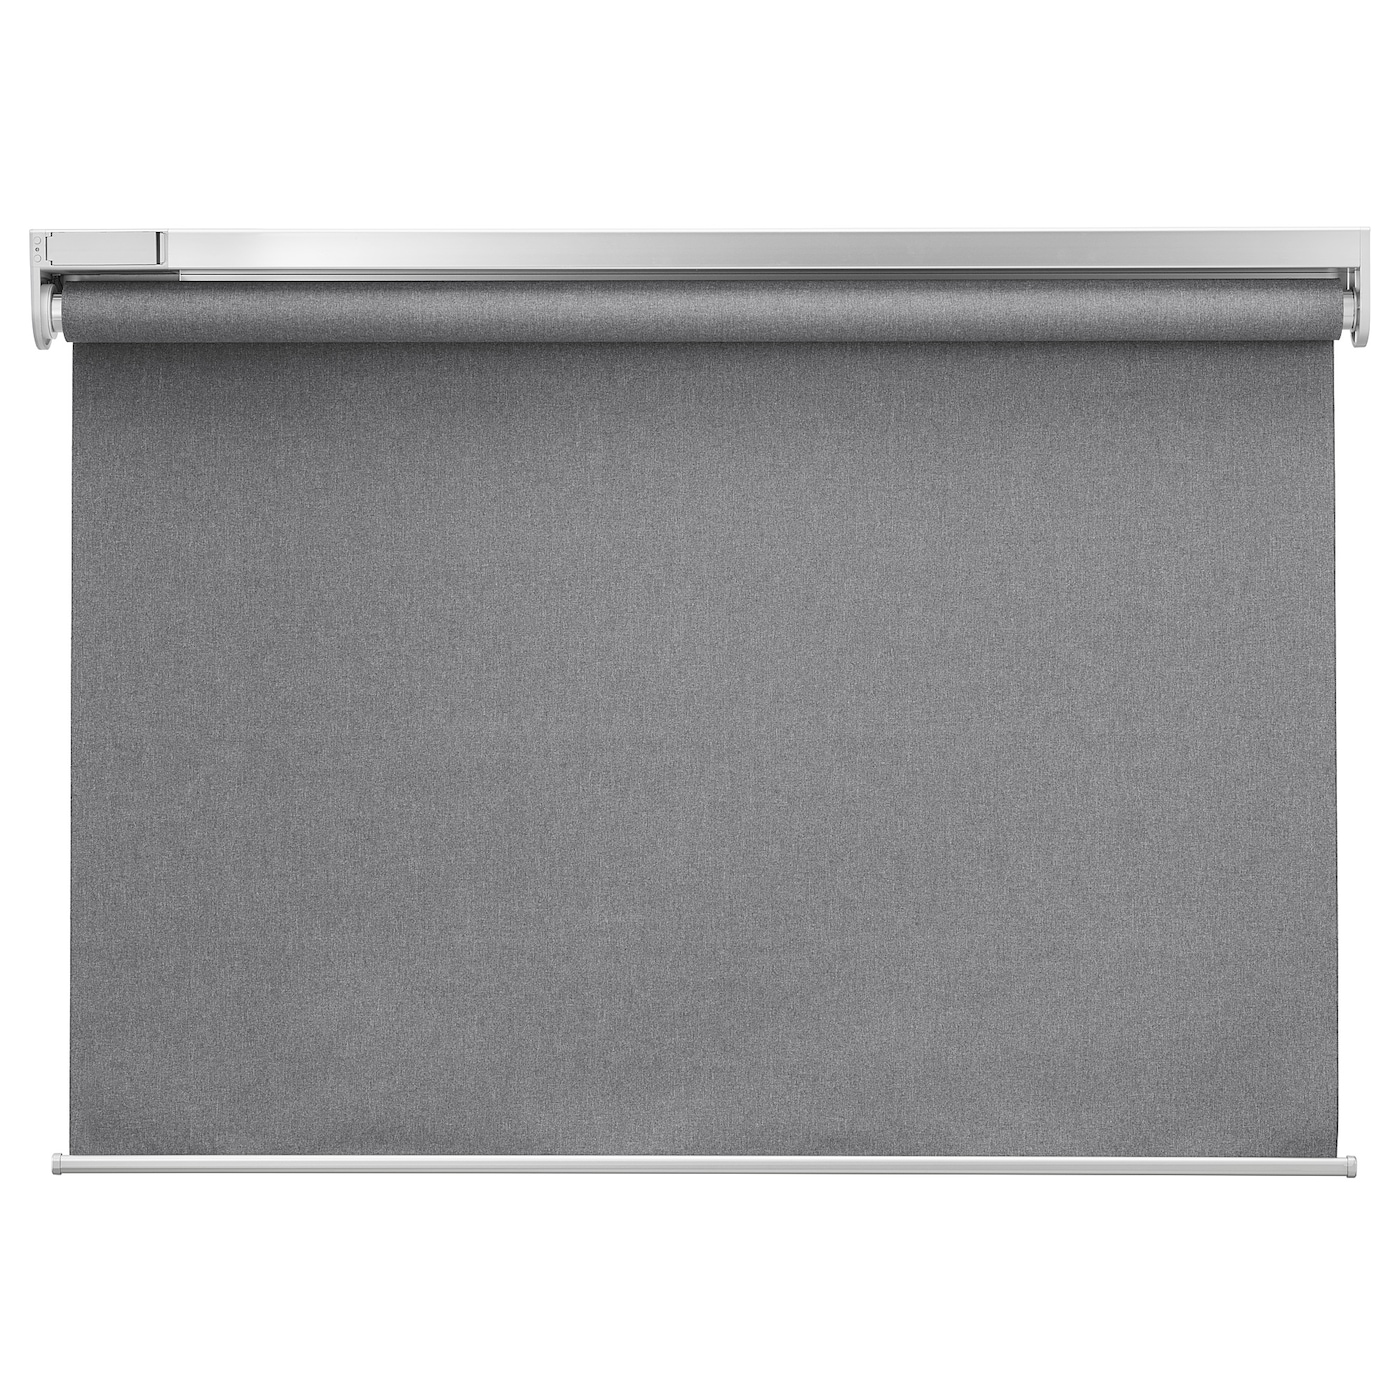 Рулонная штора (blackout) - IKEA FYRTUR, 195х140 см, серый, ФЮРТЮР ИКЕА